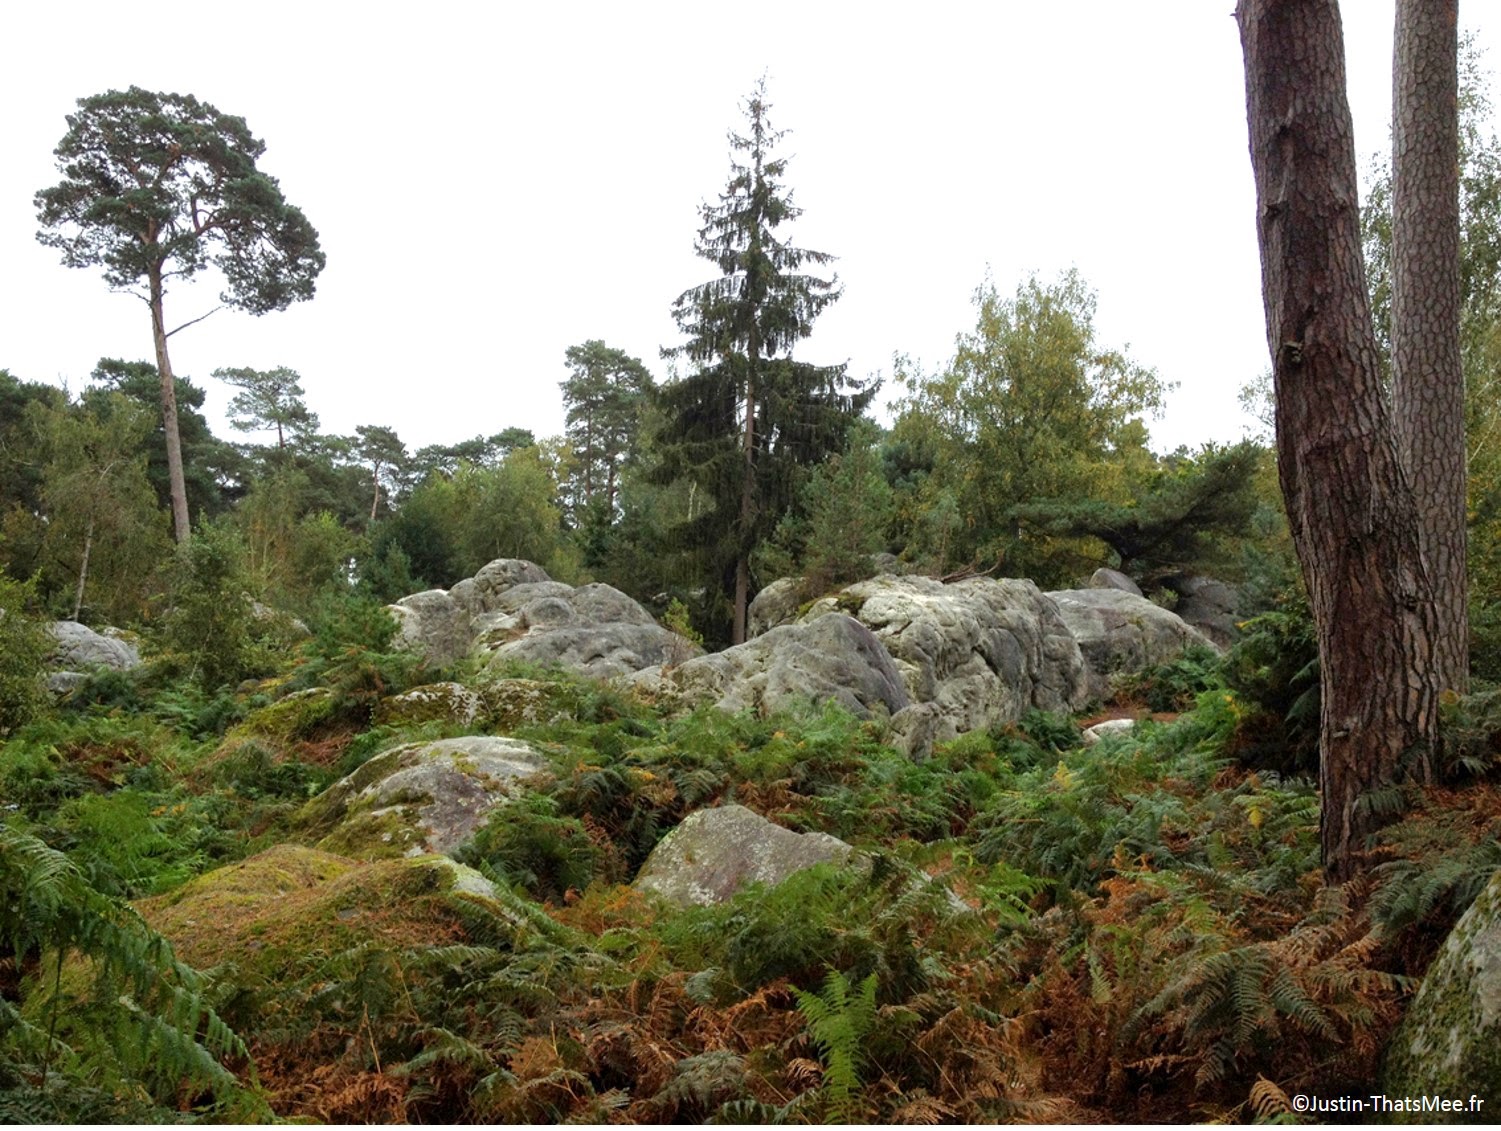 Forêt de Fontainebleau domaniale foret d'exception label national